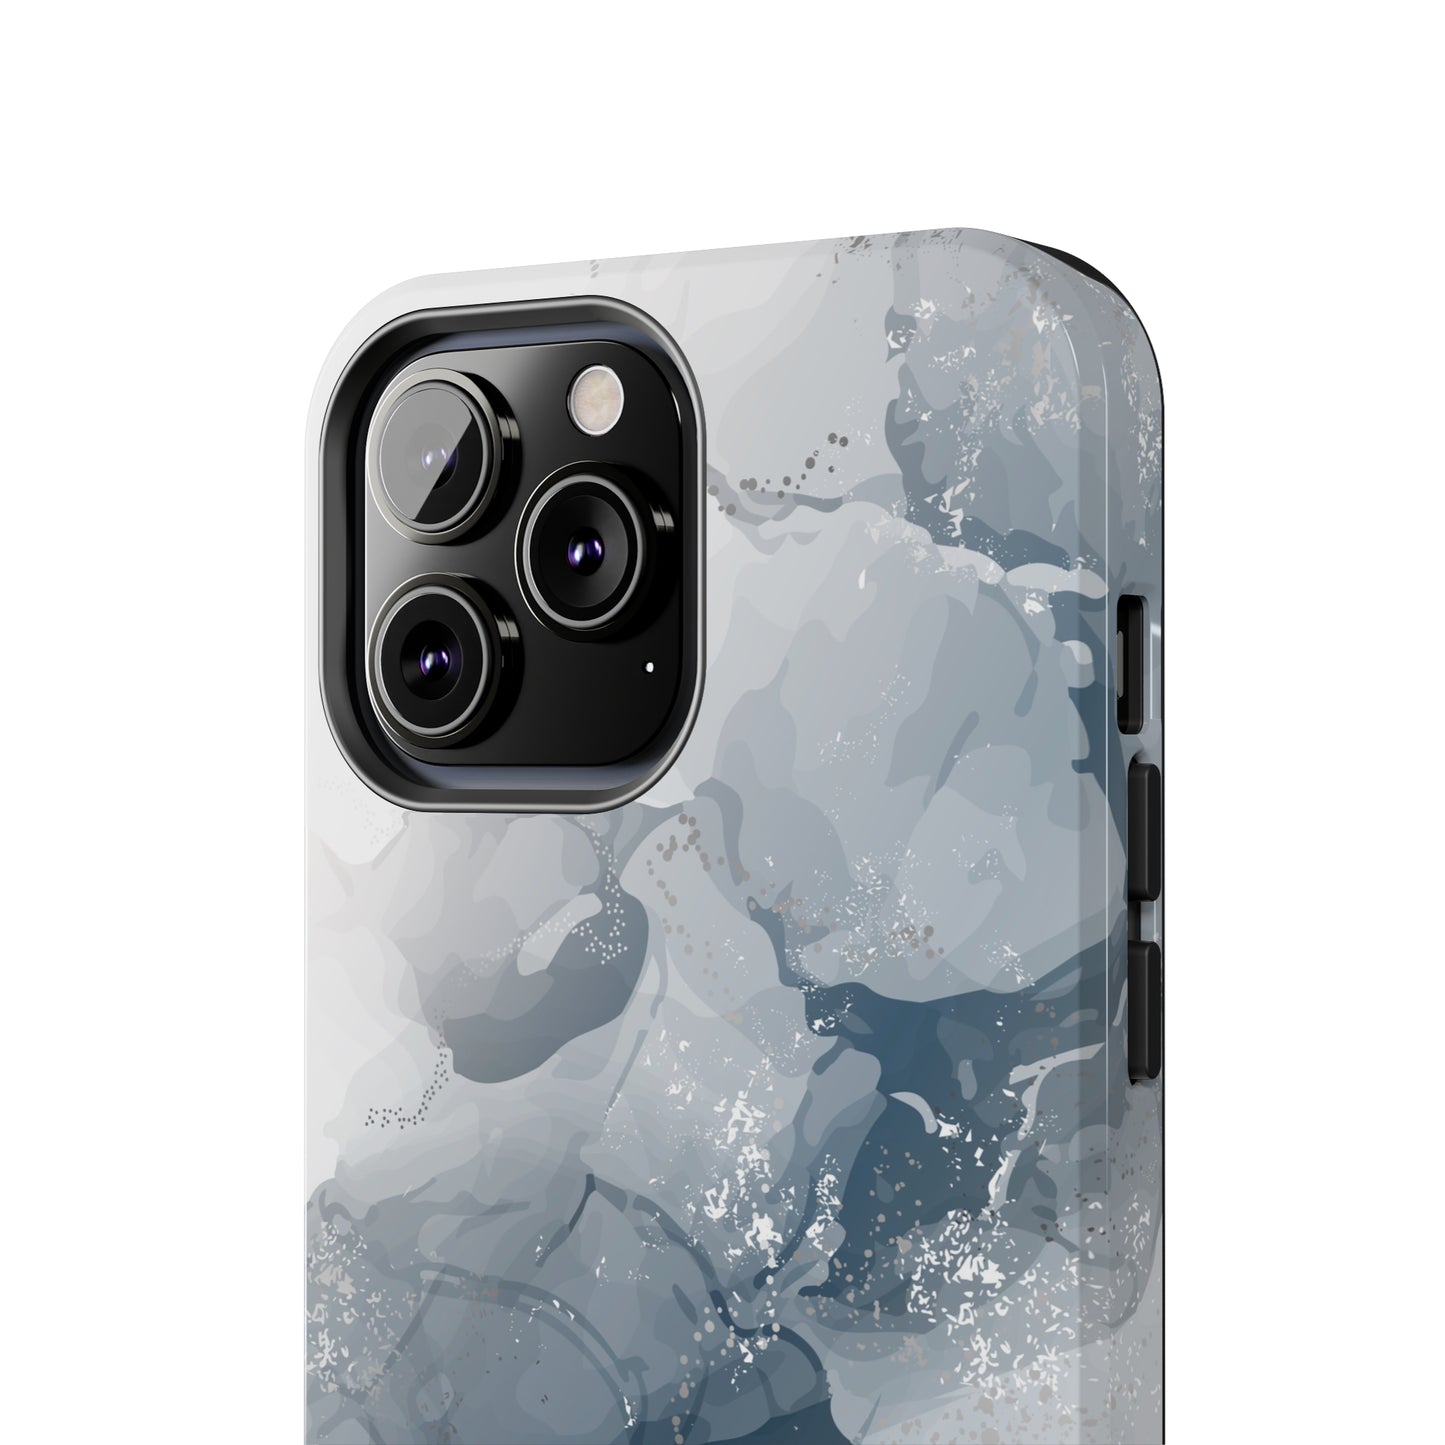 Arctic Whisper - iPhone Case